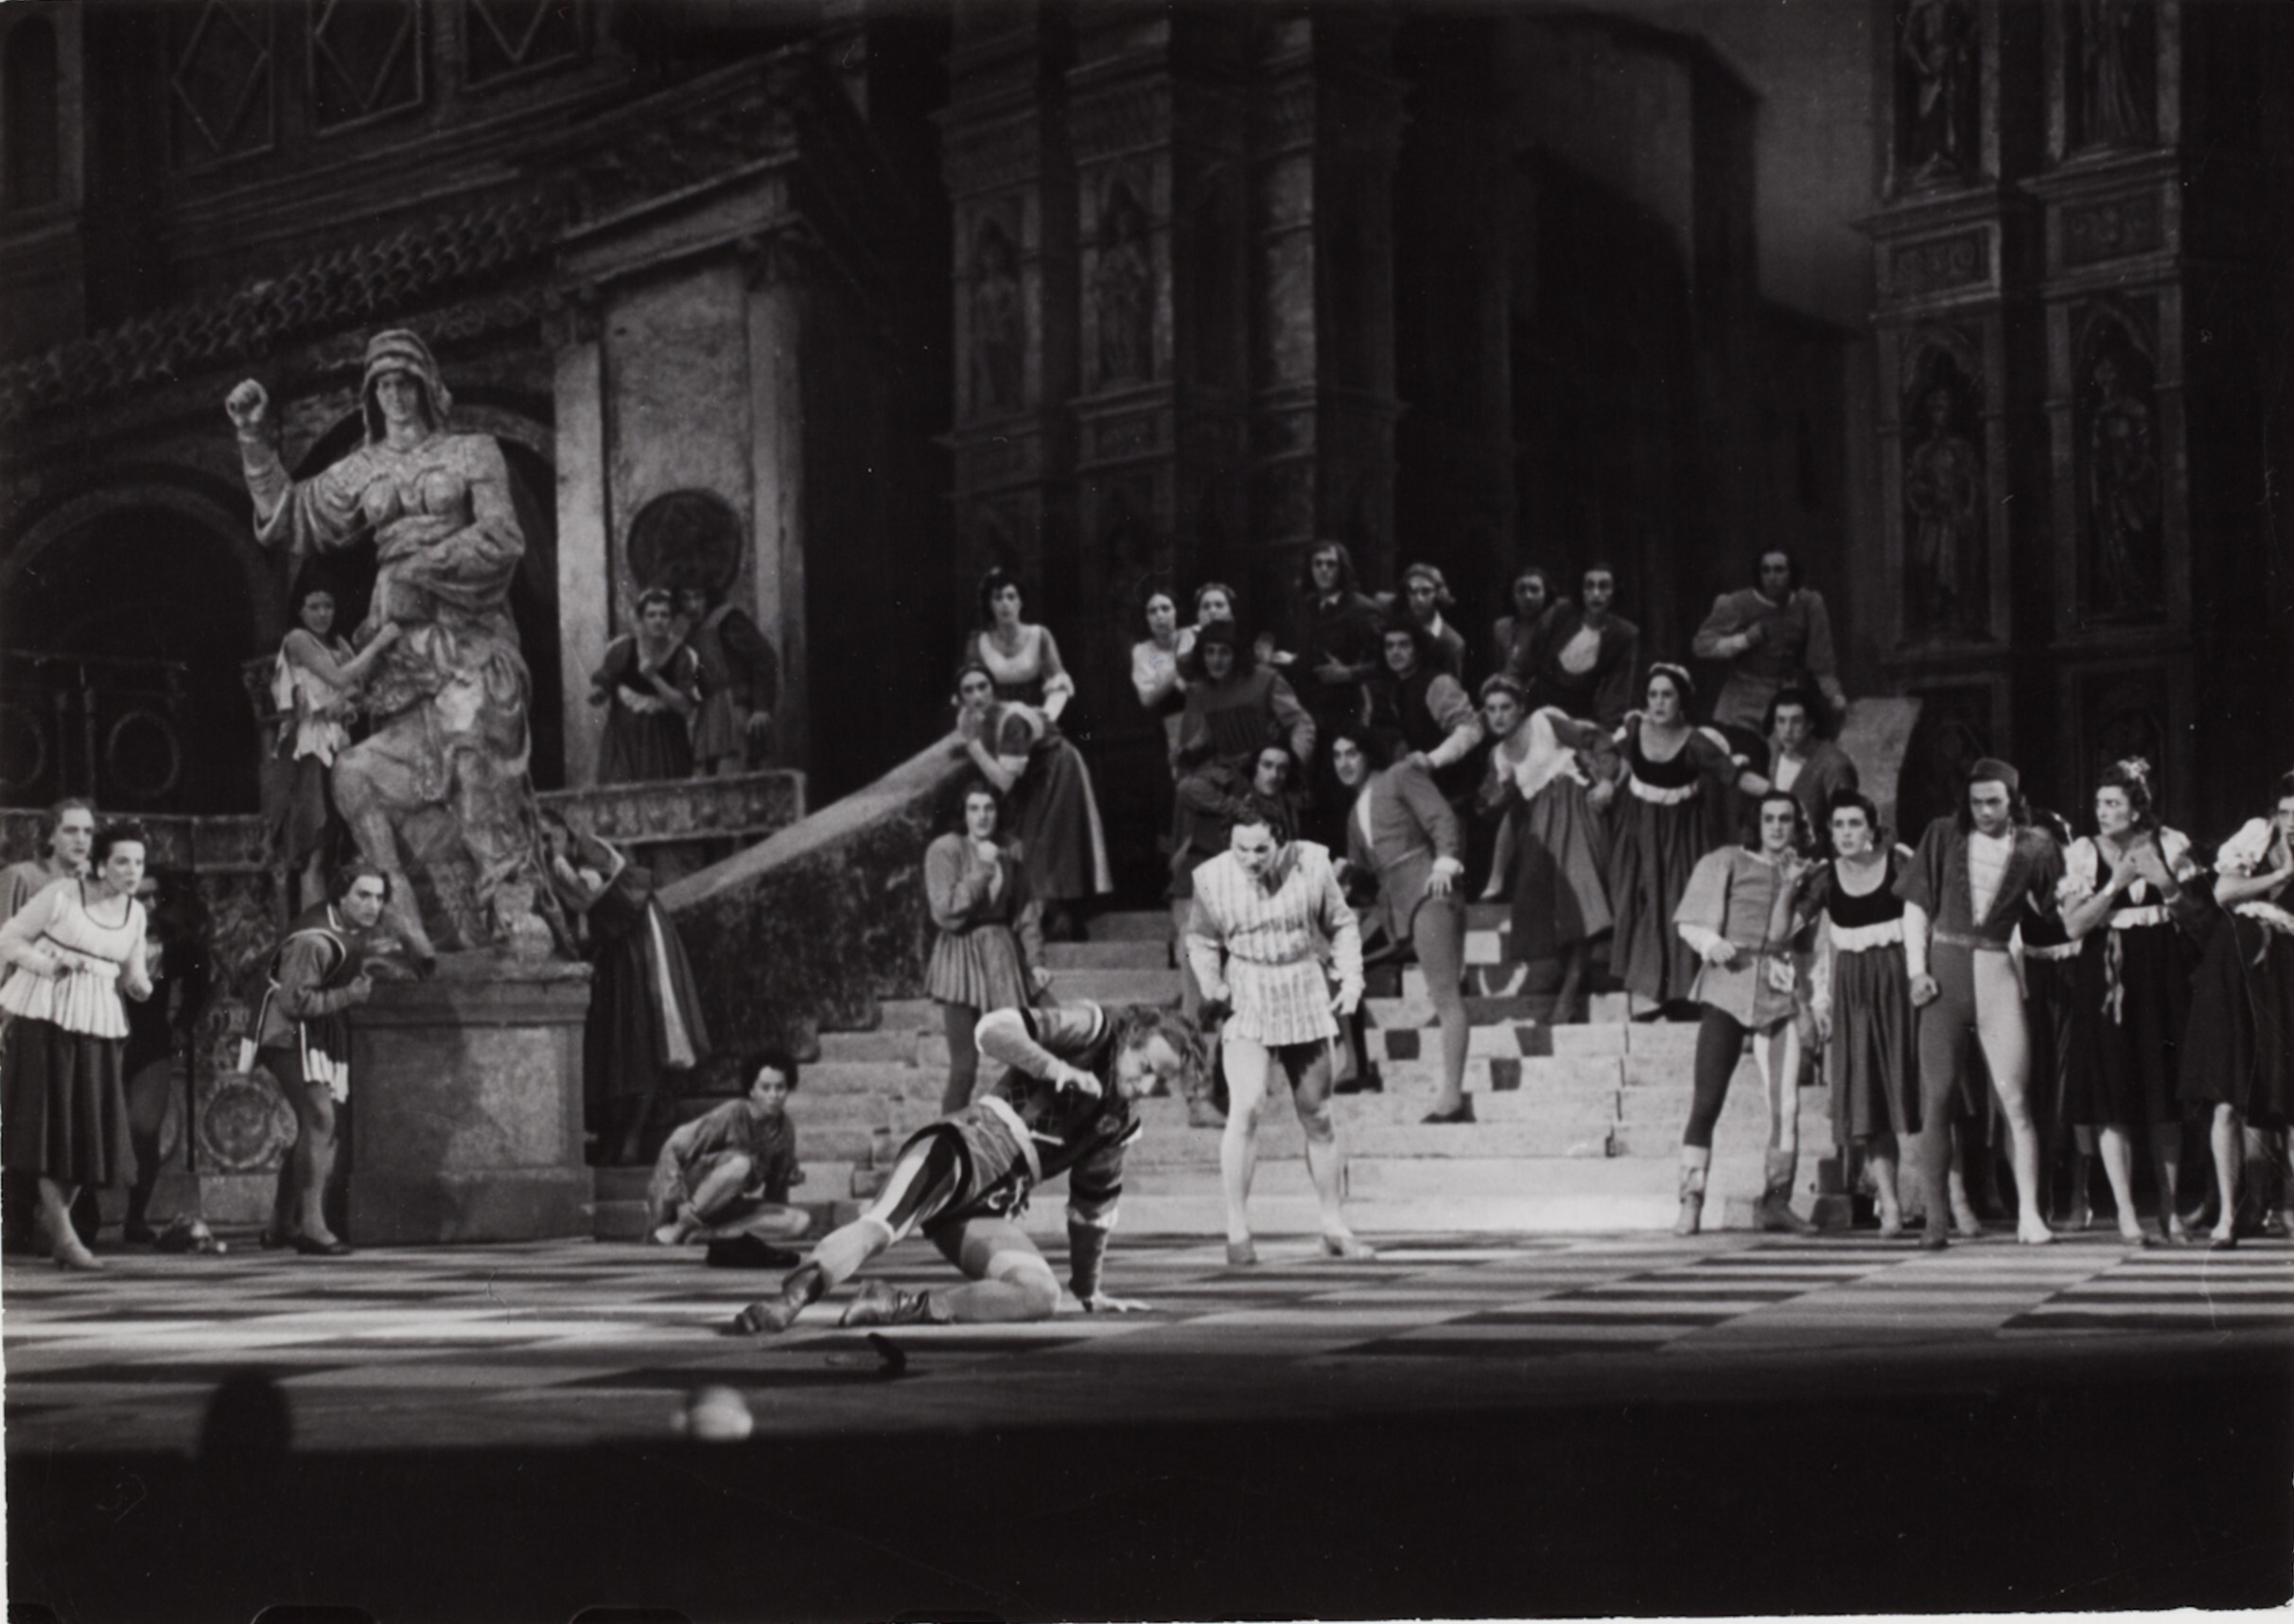 Балетный спектакль Ромео и Джульетта в Большом театре, Москва, 1947 год. Фотограф Роберт Капа